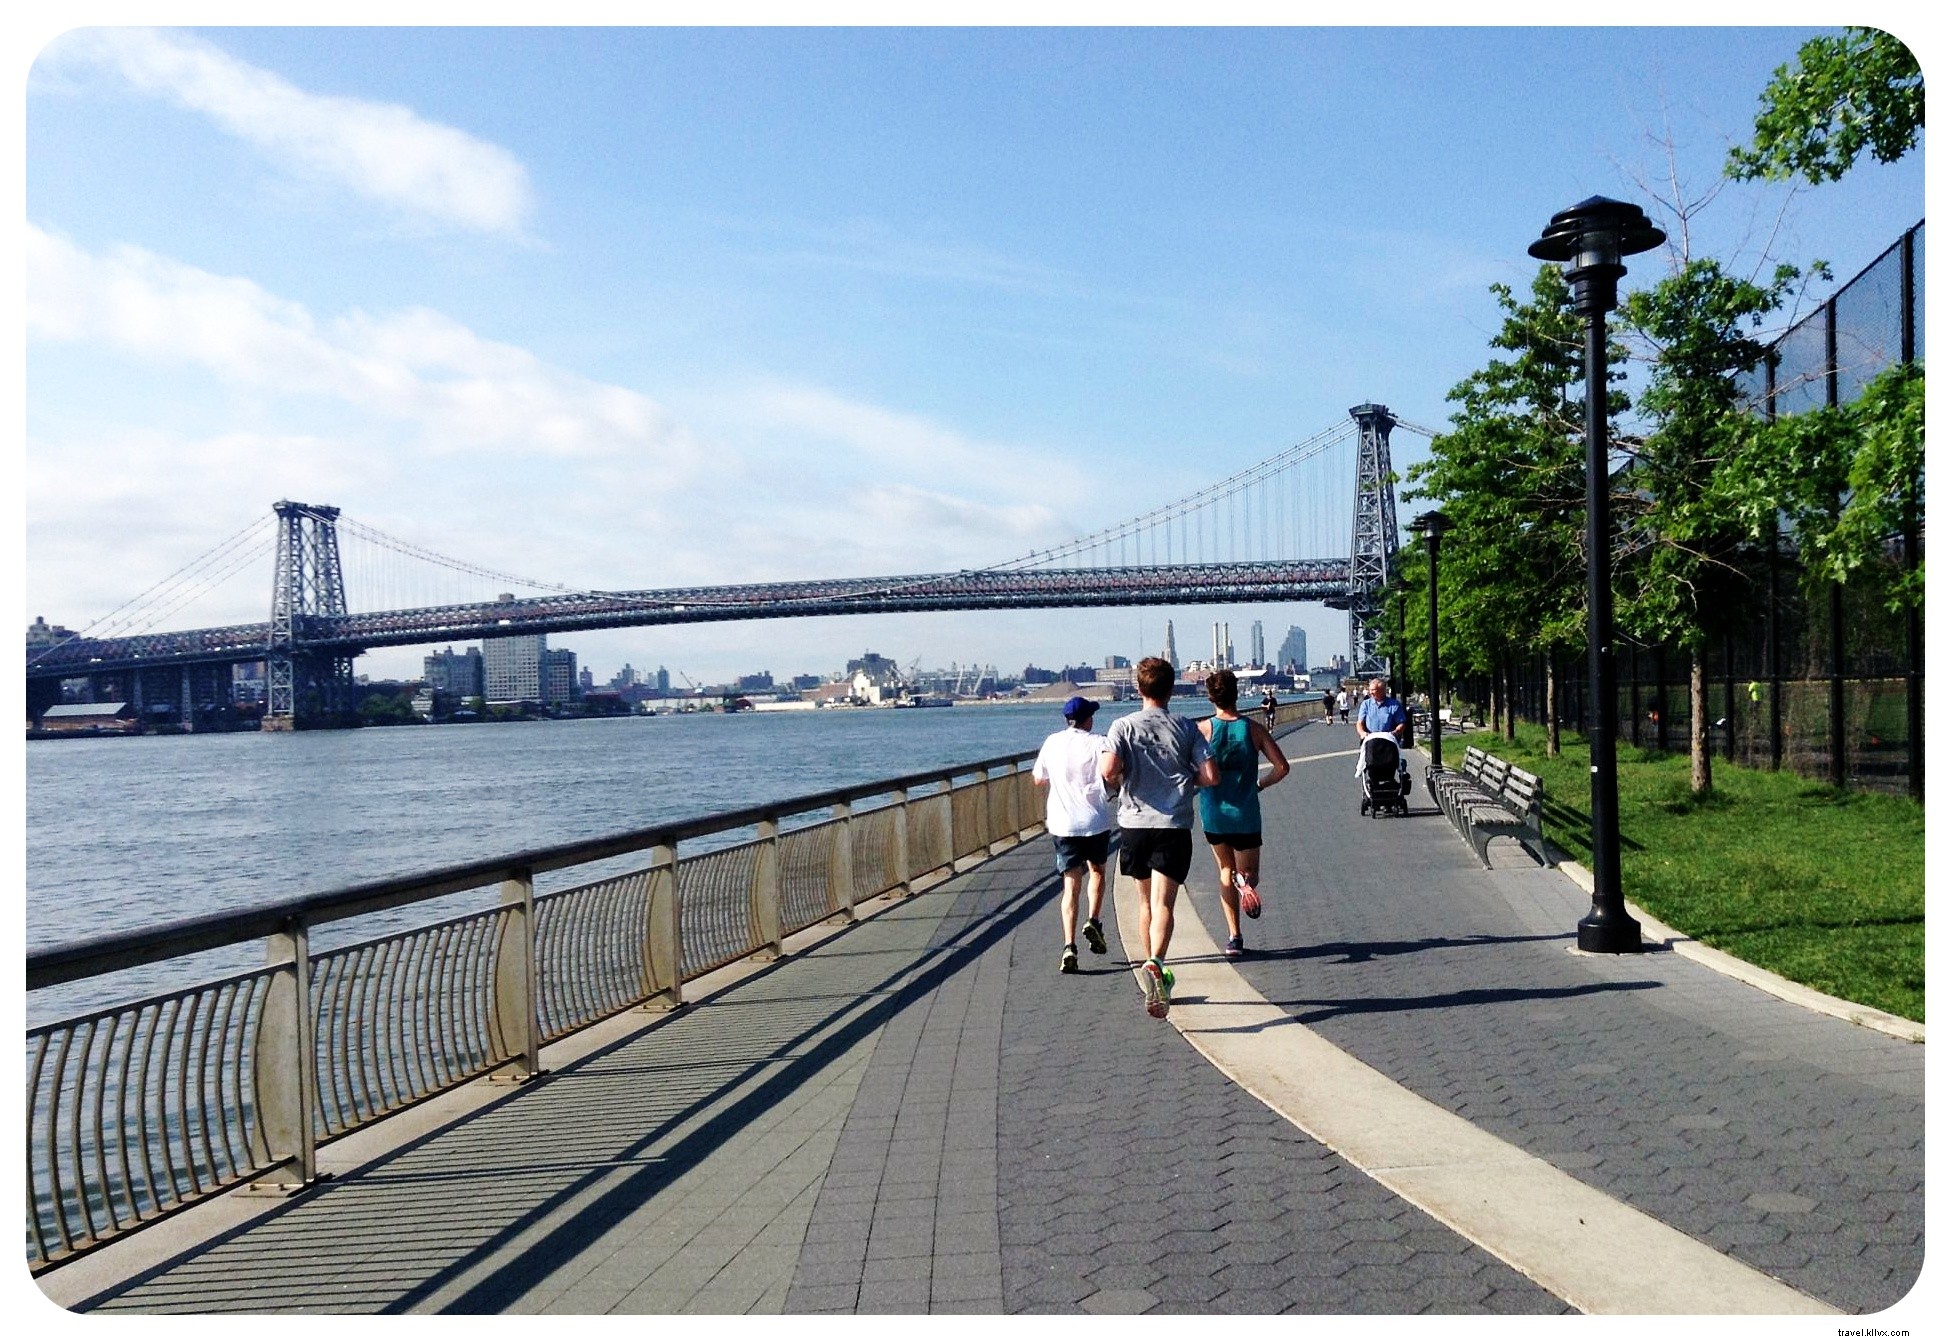 28 cosas que hacer en la ciudad de Nueva York en el verano